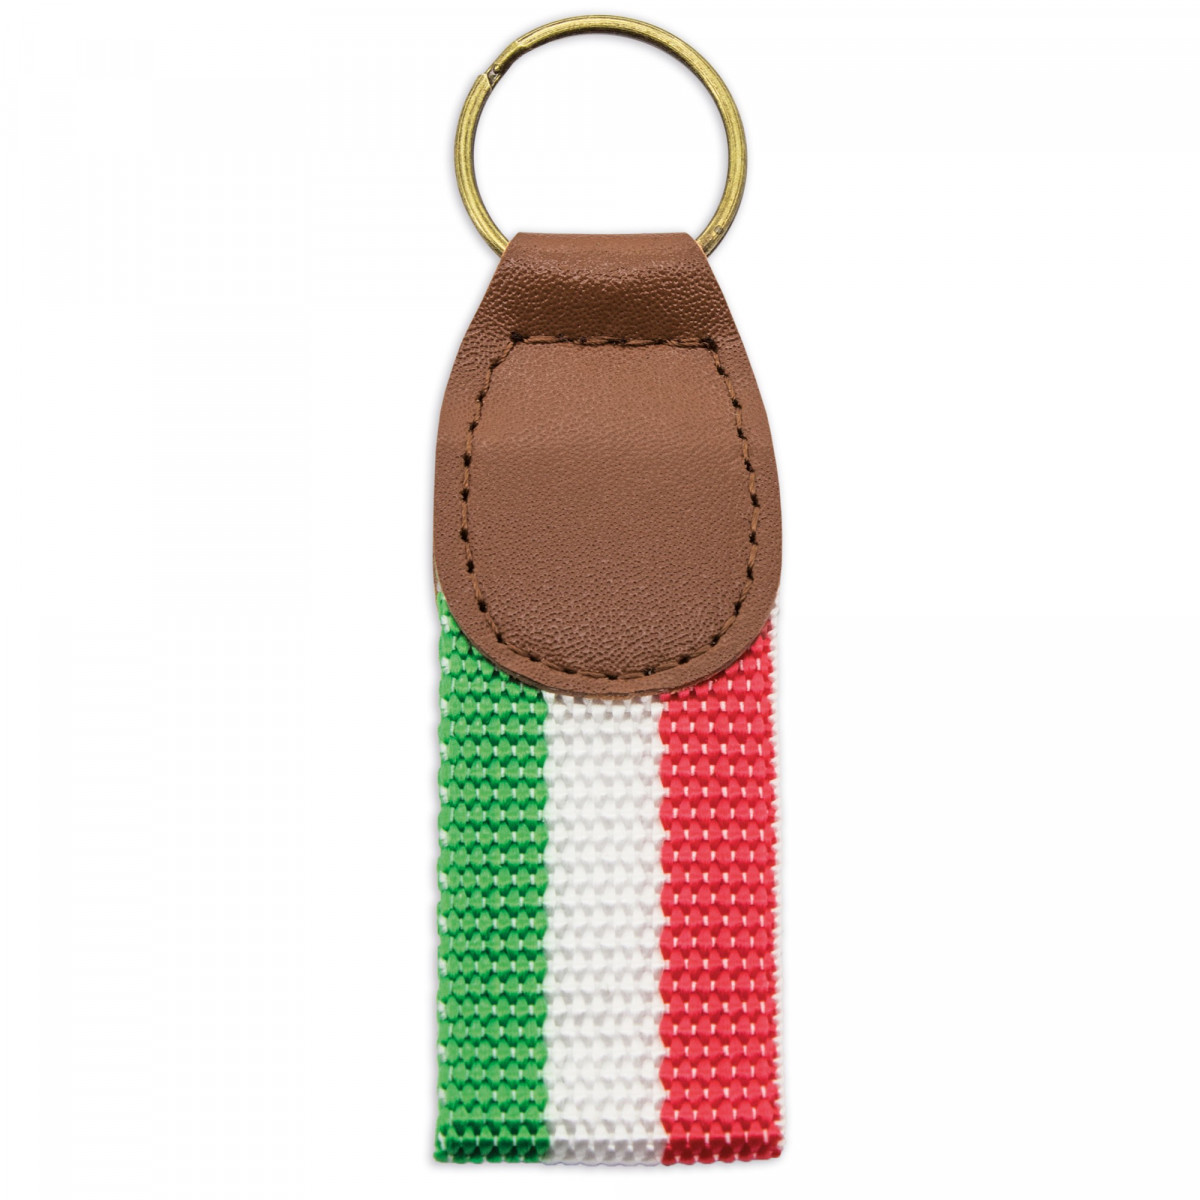 Llavero milan bandera italia